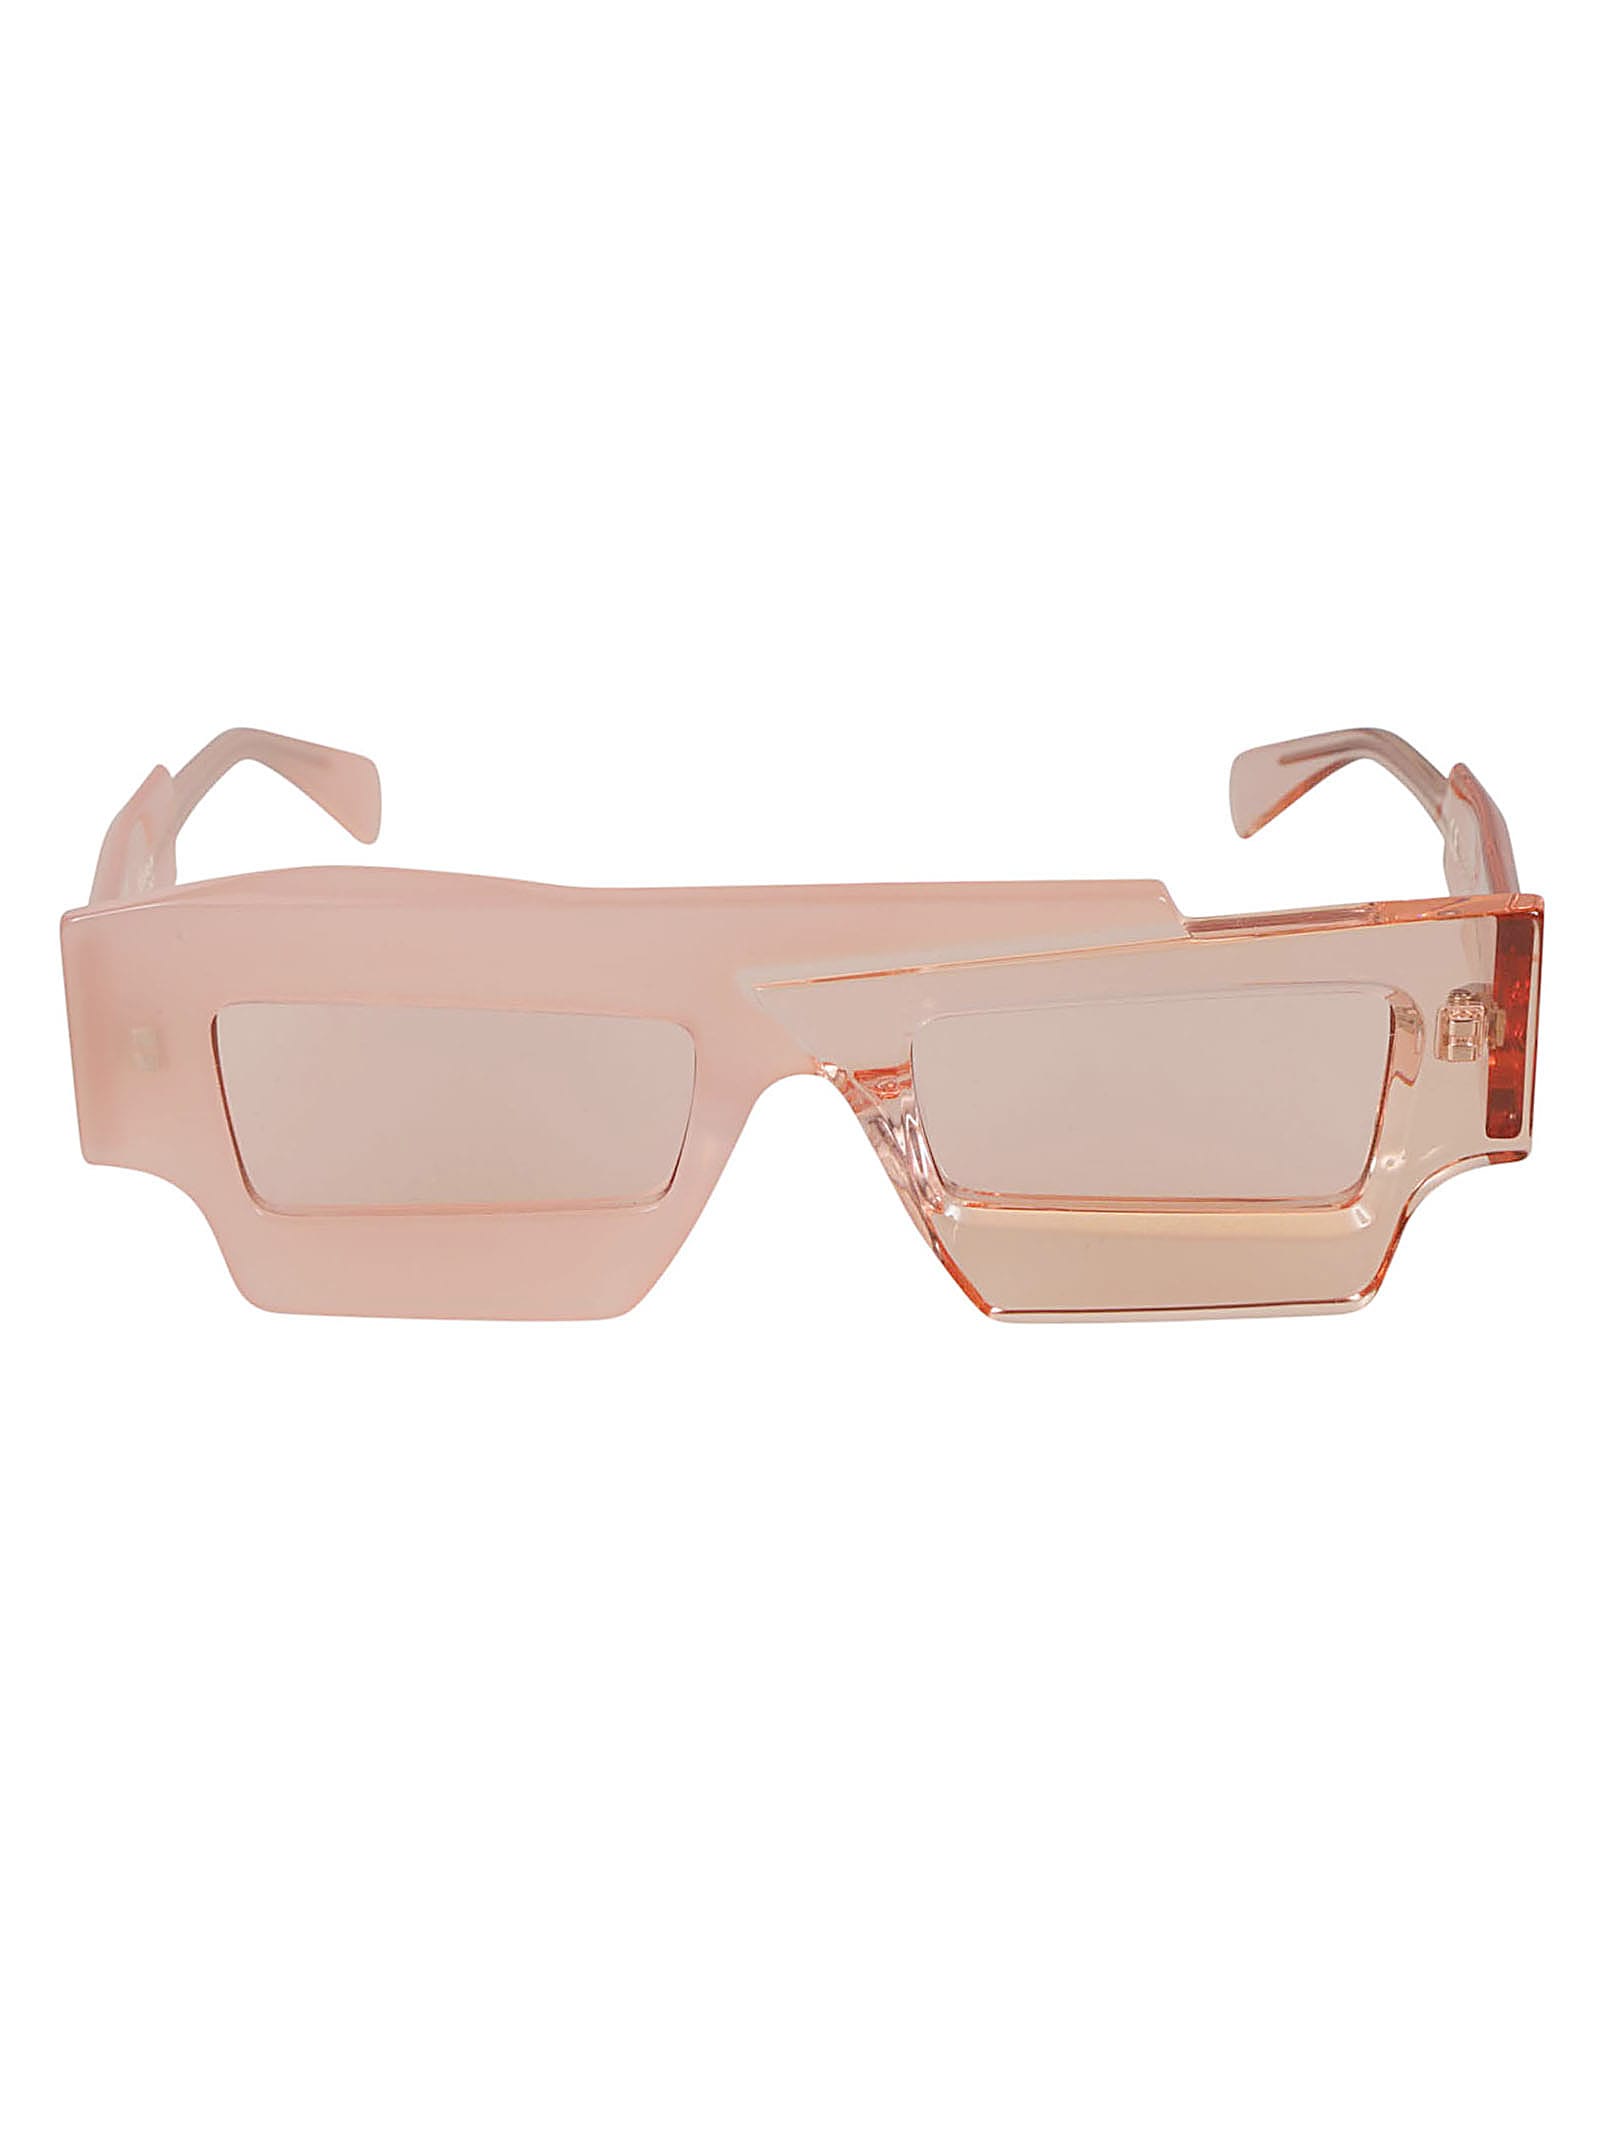 Kuboraum X12 Sunglasses Sunglasses In Pink